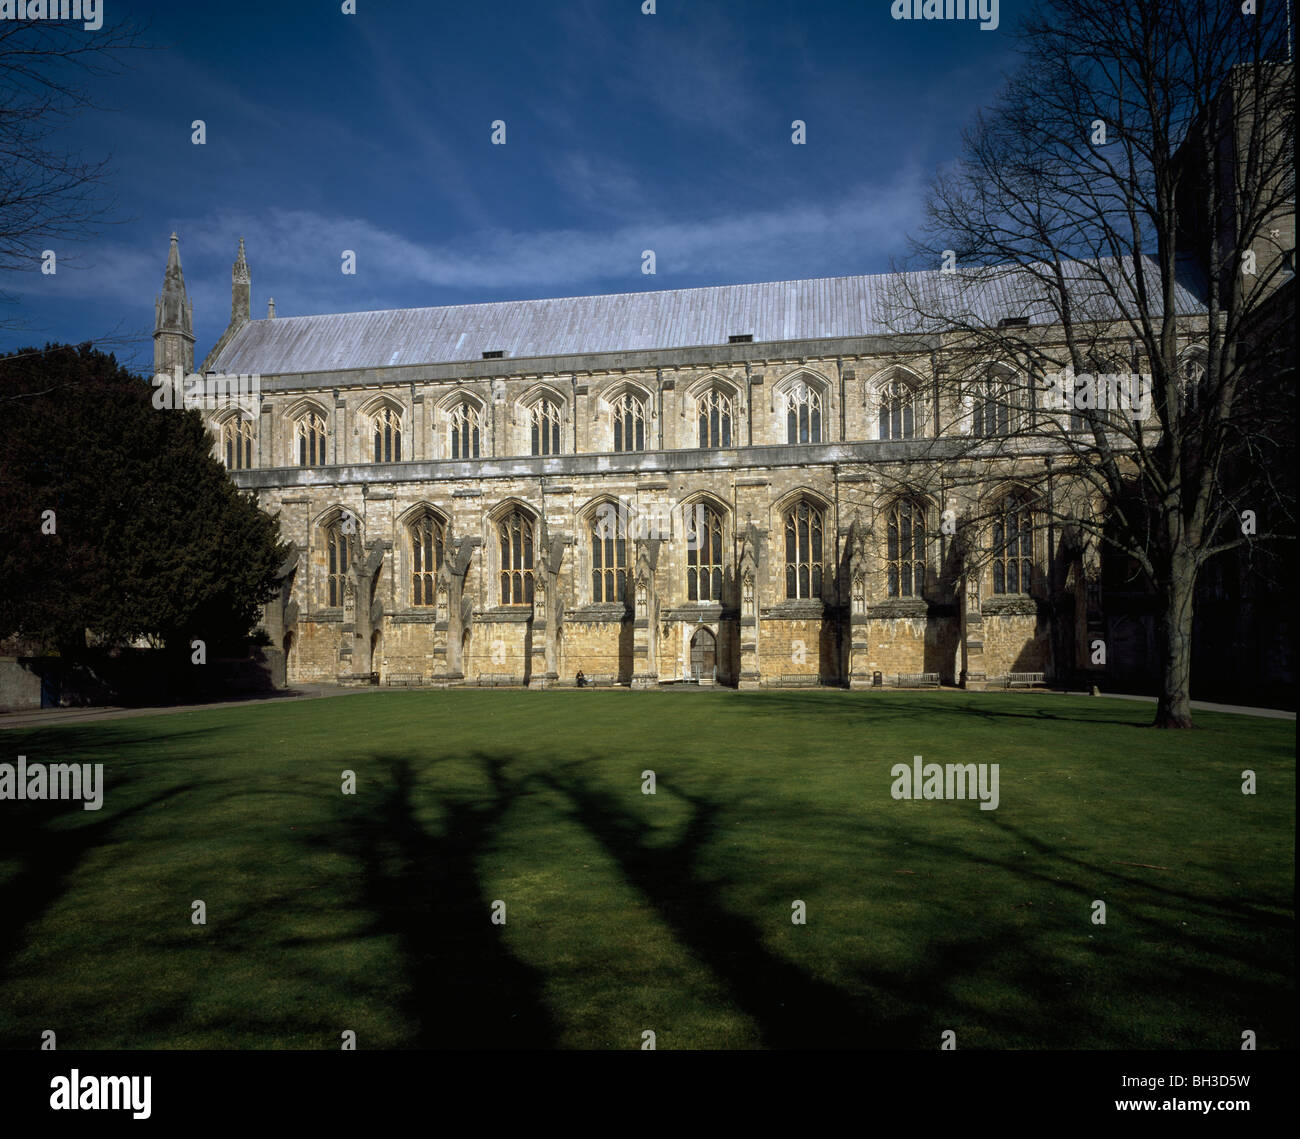 La cathédrale de Winchester, Hampshire, Angleterre. Douze baies de l'élévation sud de la nef, élévation extérieure Banque D'Images